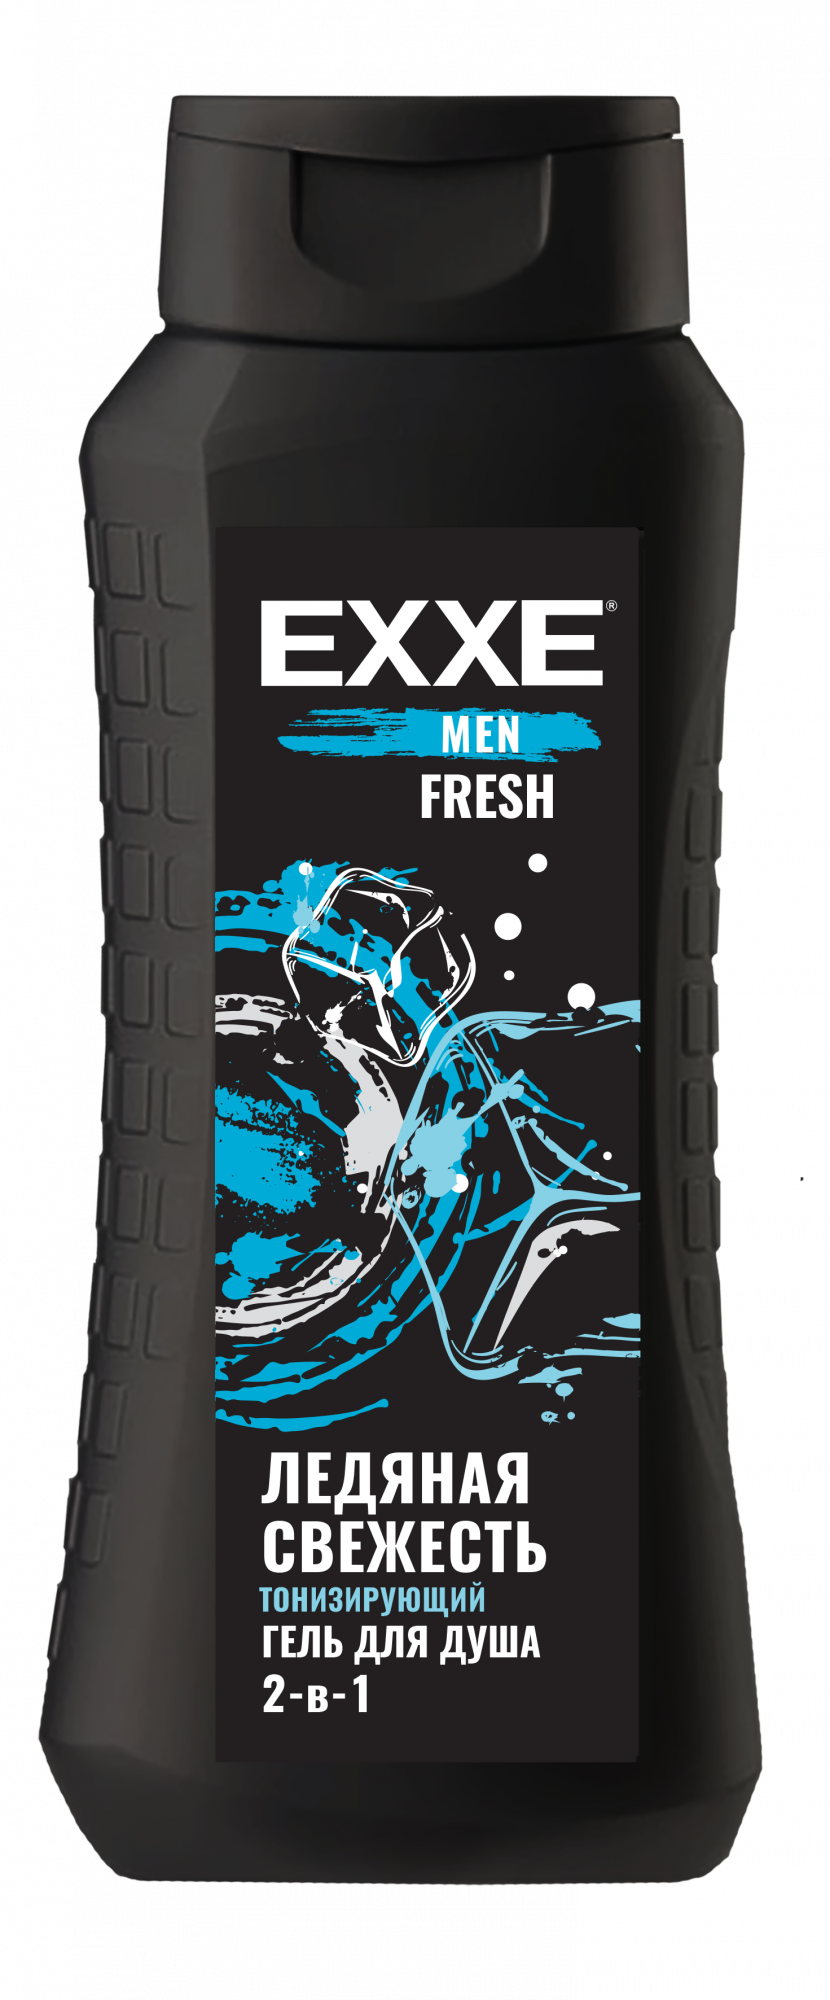 Гель для душа EXXE Men Fresh 2 в 1 мужской, тонизирующий 400 мл - купить в Мегамаркет Москва, цена на Мегамаркет